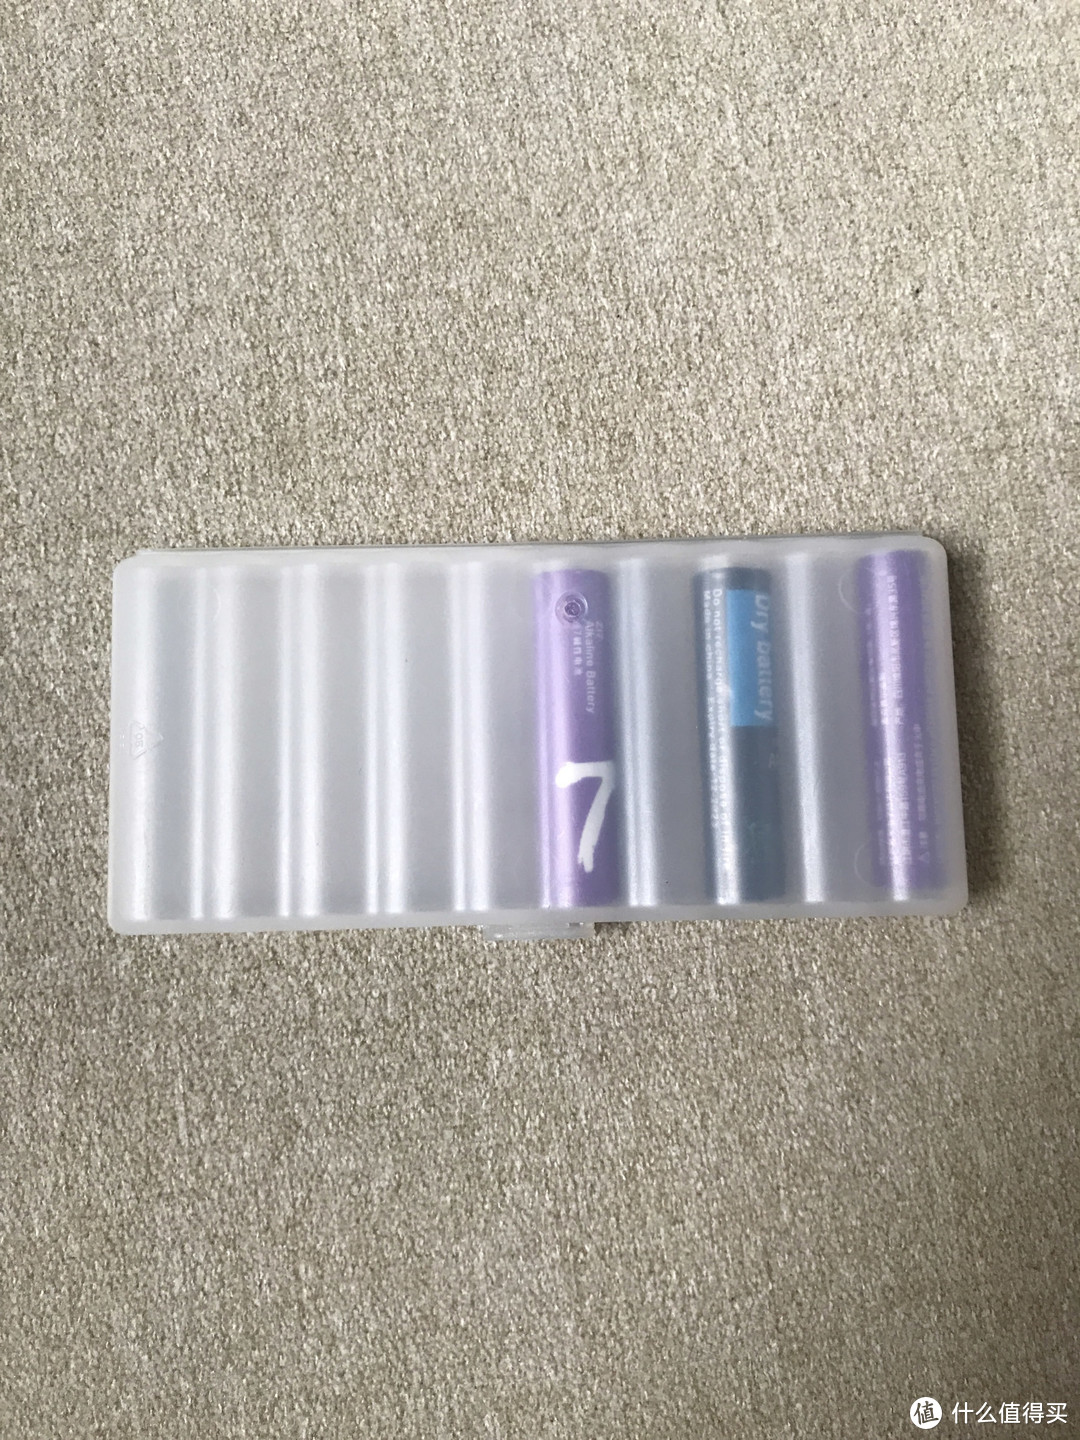 紫米的7号彩虹电池还是值得购买的！